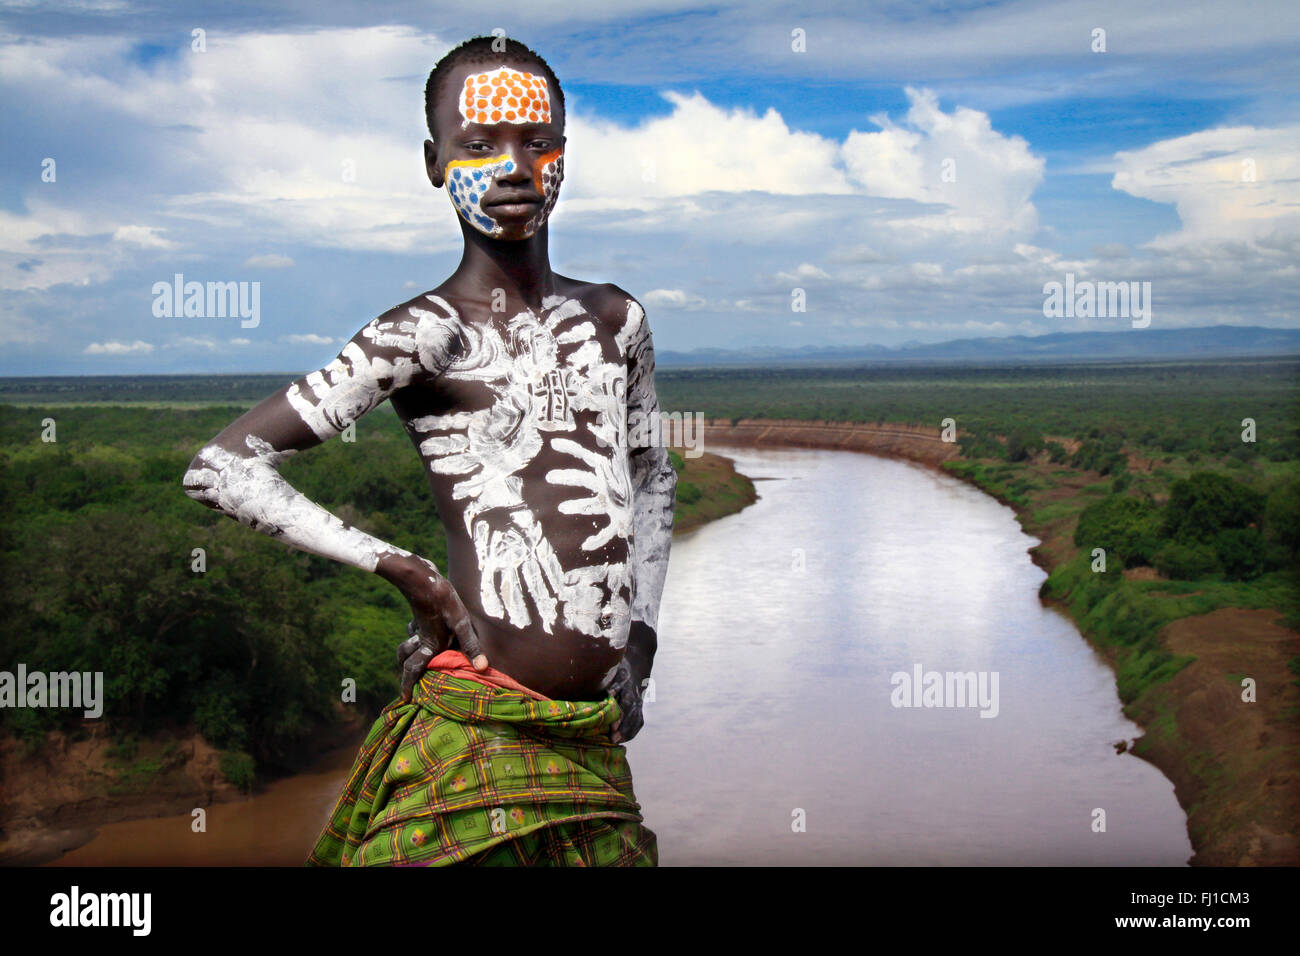 Karo giovane con il body painting, ponendo in villaggio nella parte anteriore del fiume Omo nella valle dell'Omo , Etiopia Foto Stock